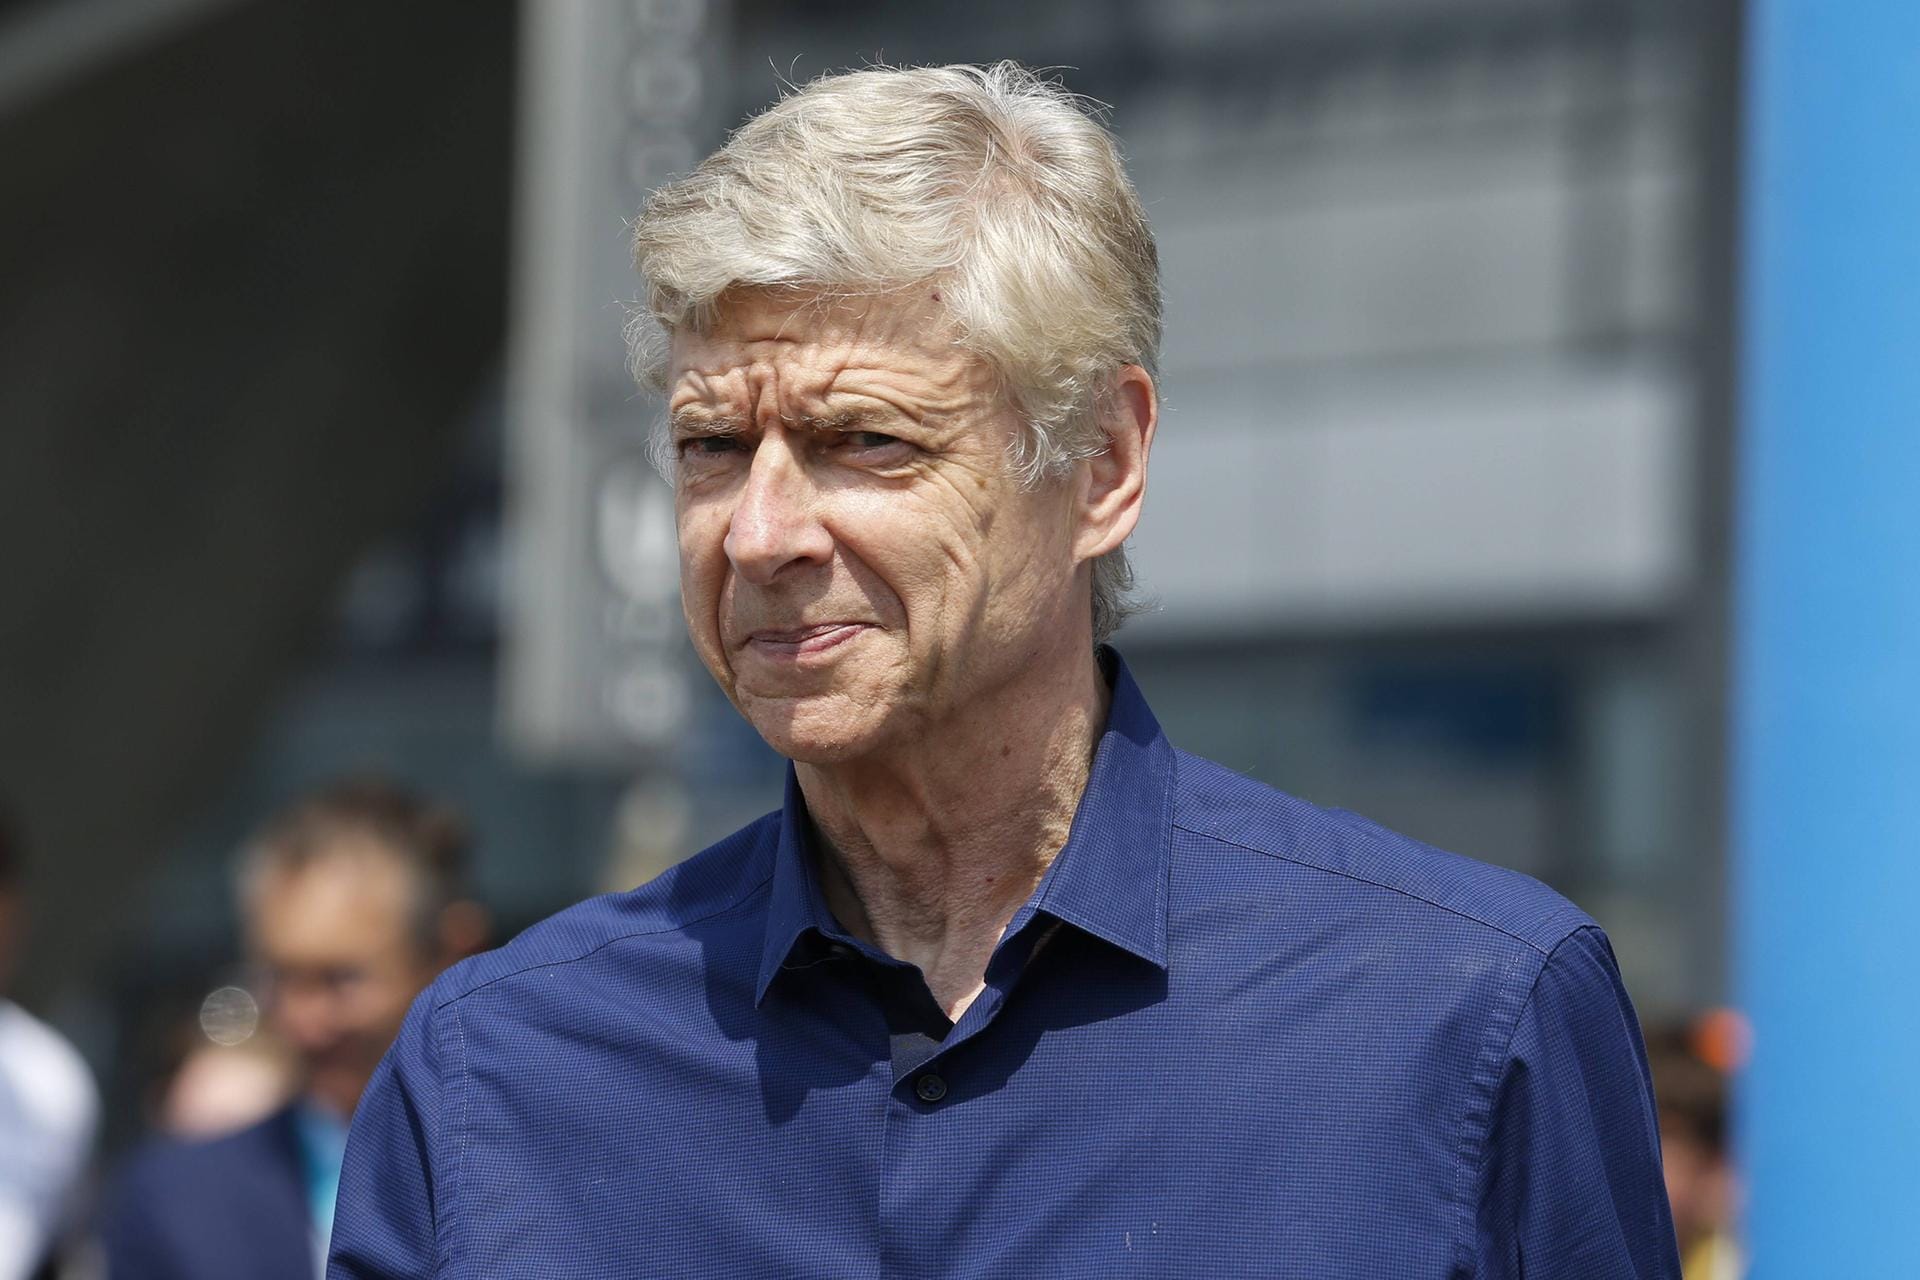 Arsène Wenger: Zur Zeit vereinslos. Trainierte von 1996 bis Sommer 2018 den FC Arsenal.